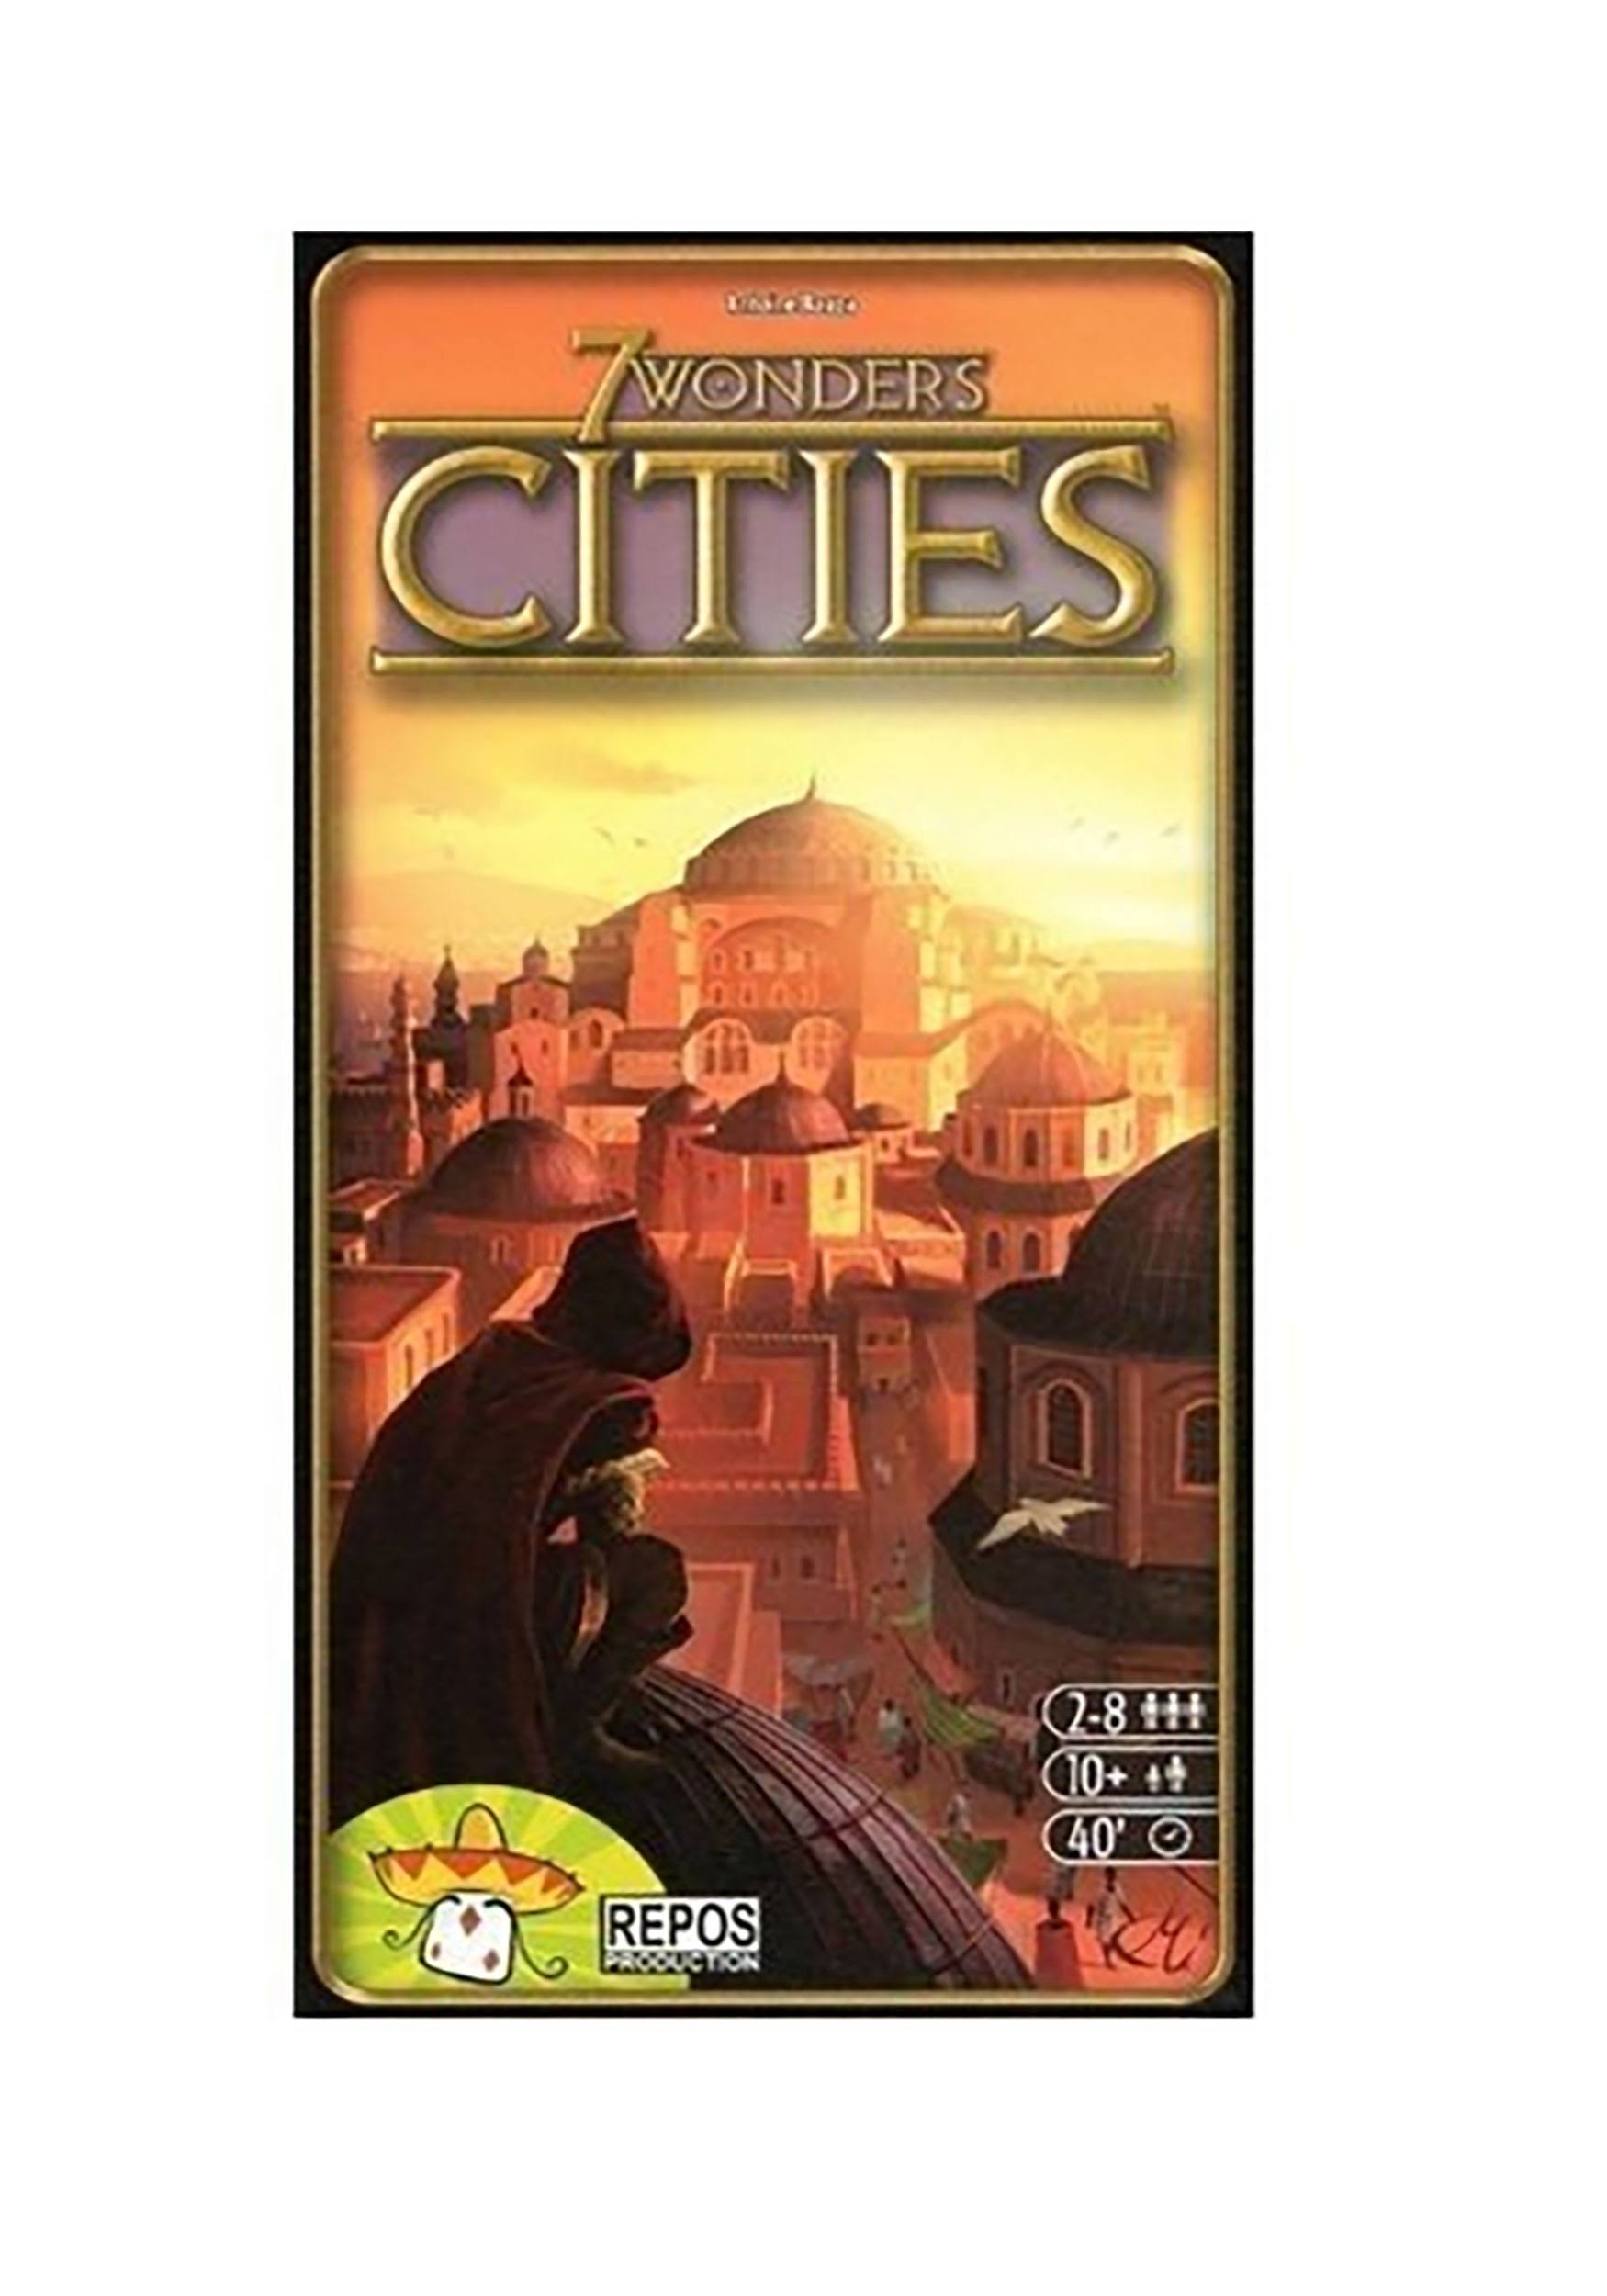 7 Wonders Cities Board Game